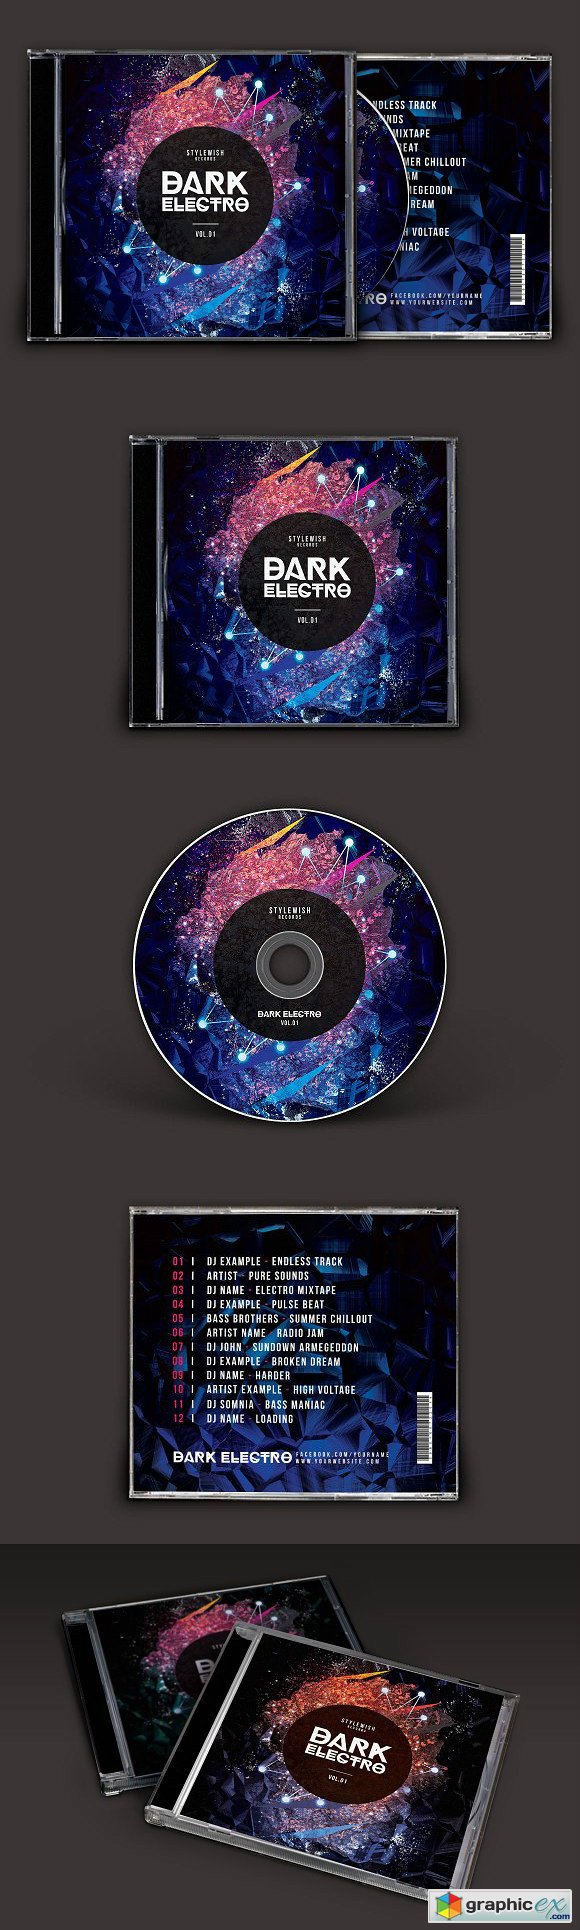 Dark Electro CD Cover